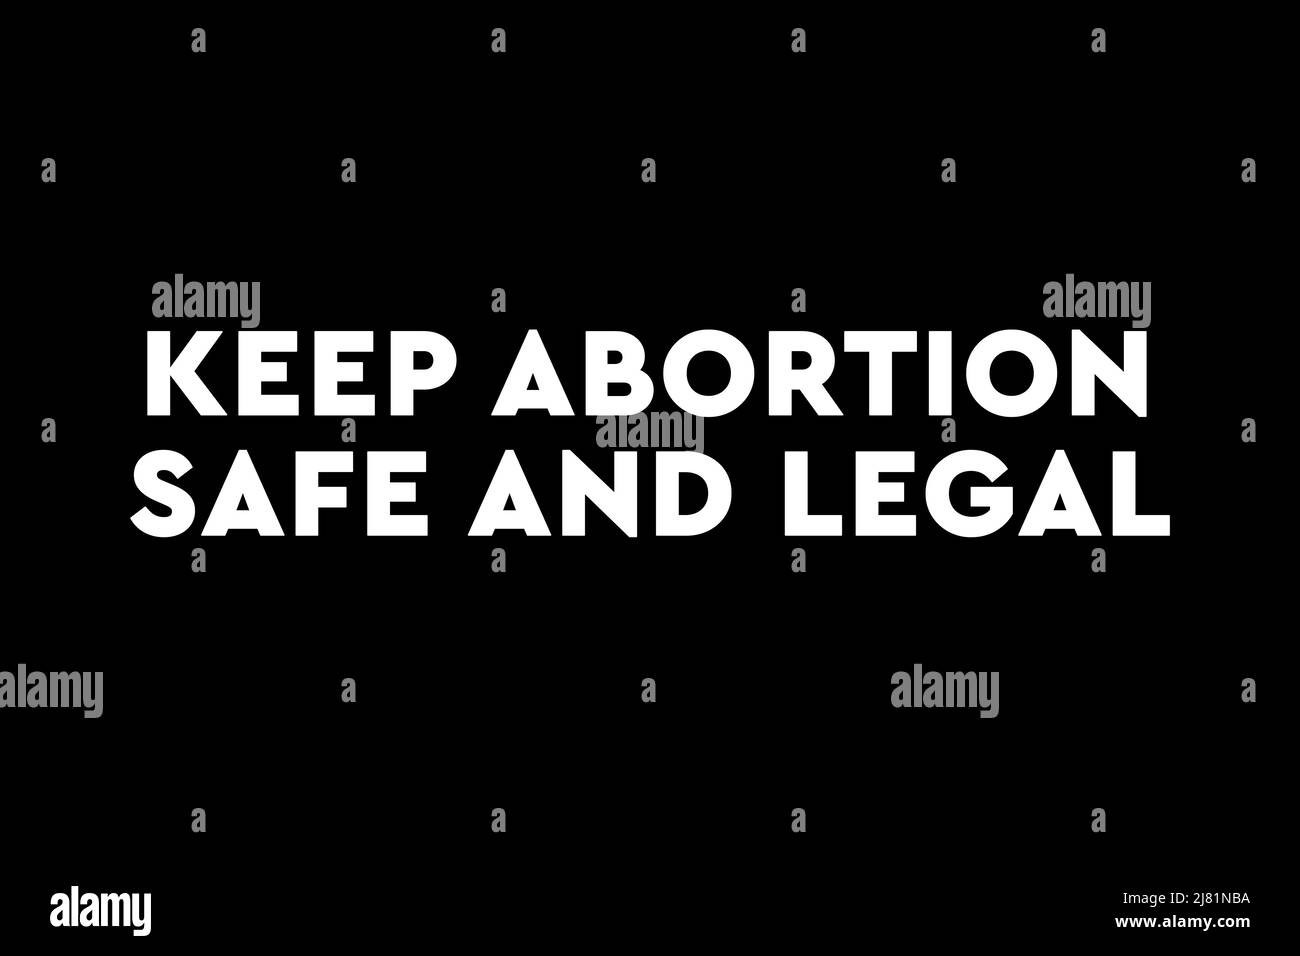 Veiller à ce que l'avortement soit sécuritaire et légal. Affiche, bannière ou arrière-plan pro avortement Banque D'Images